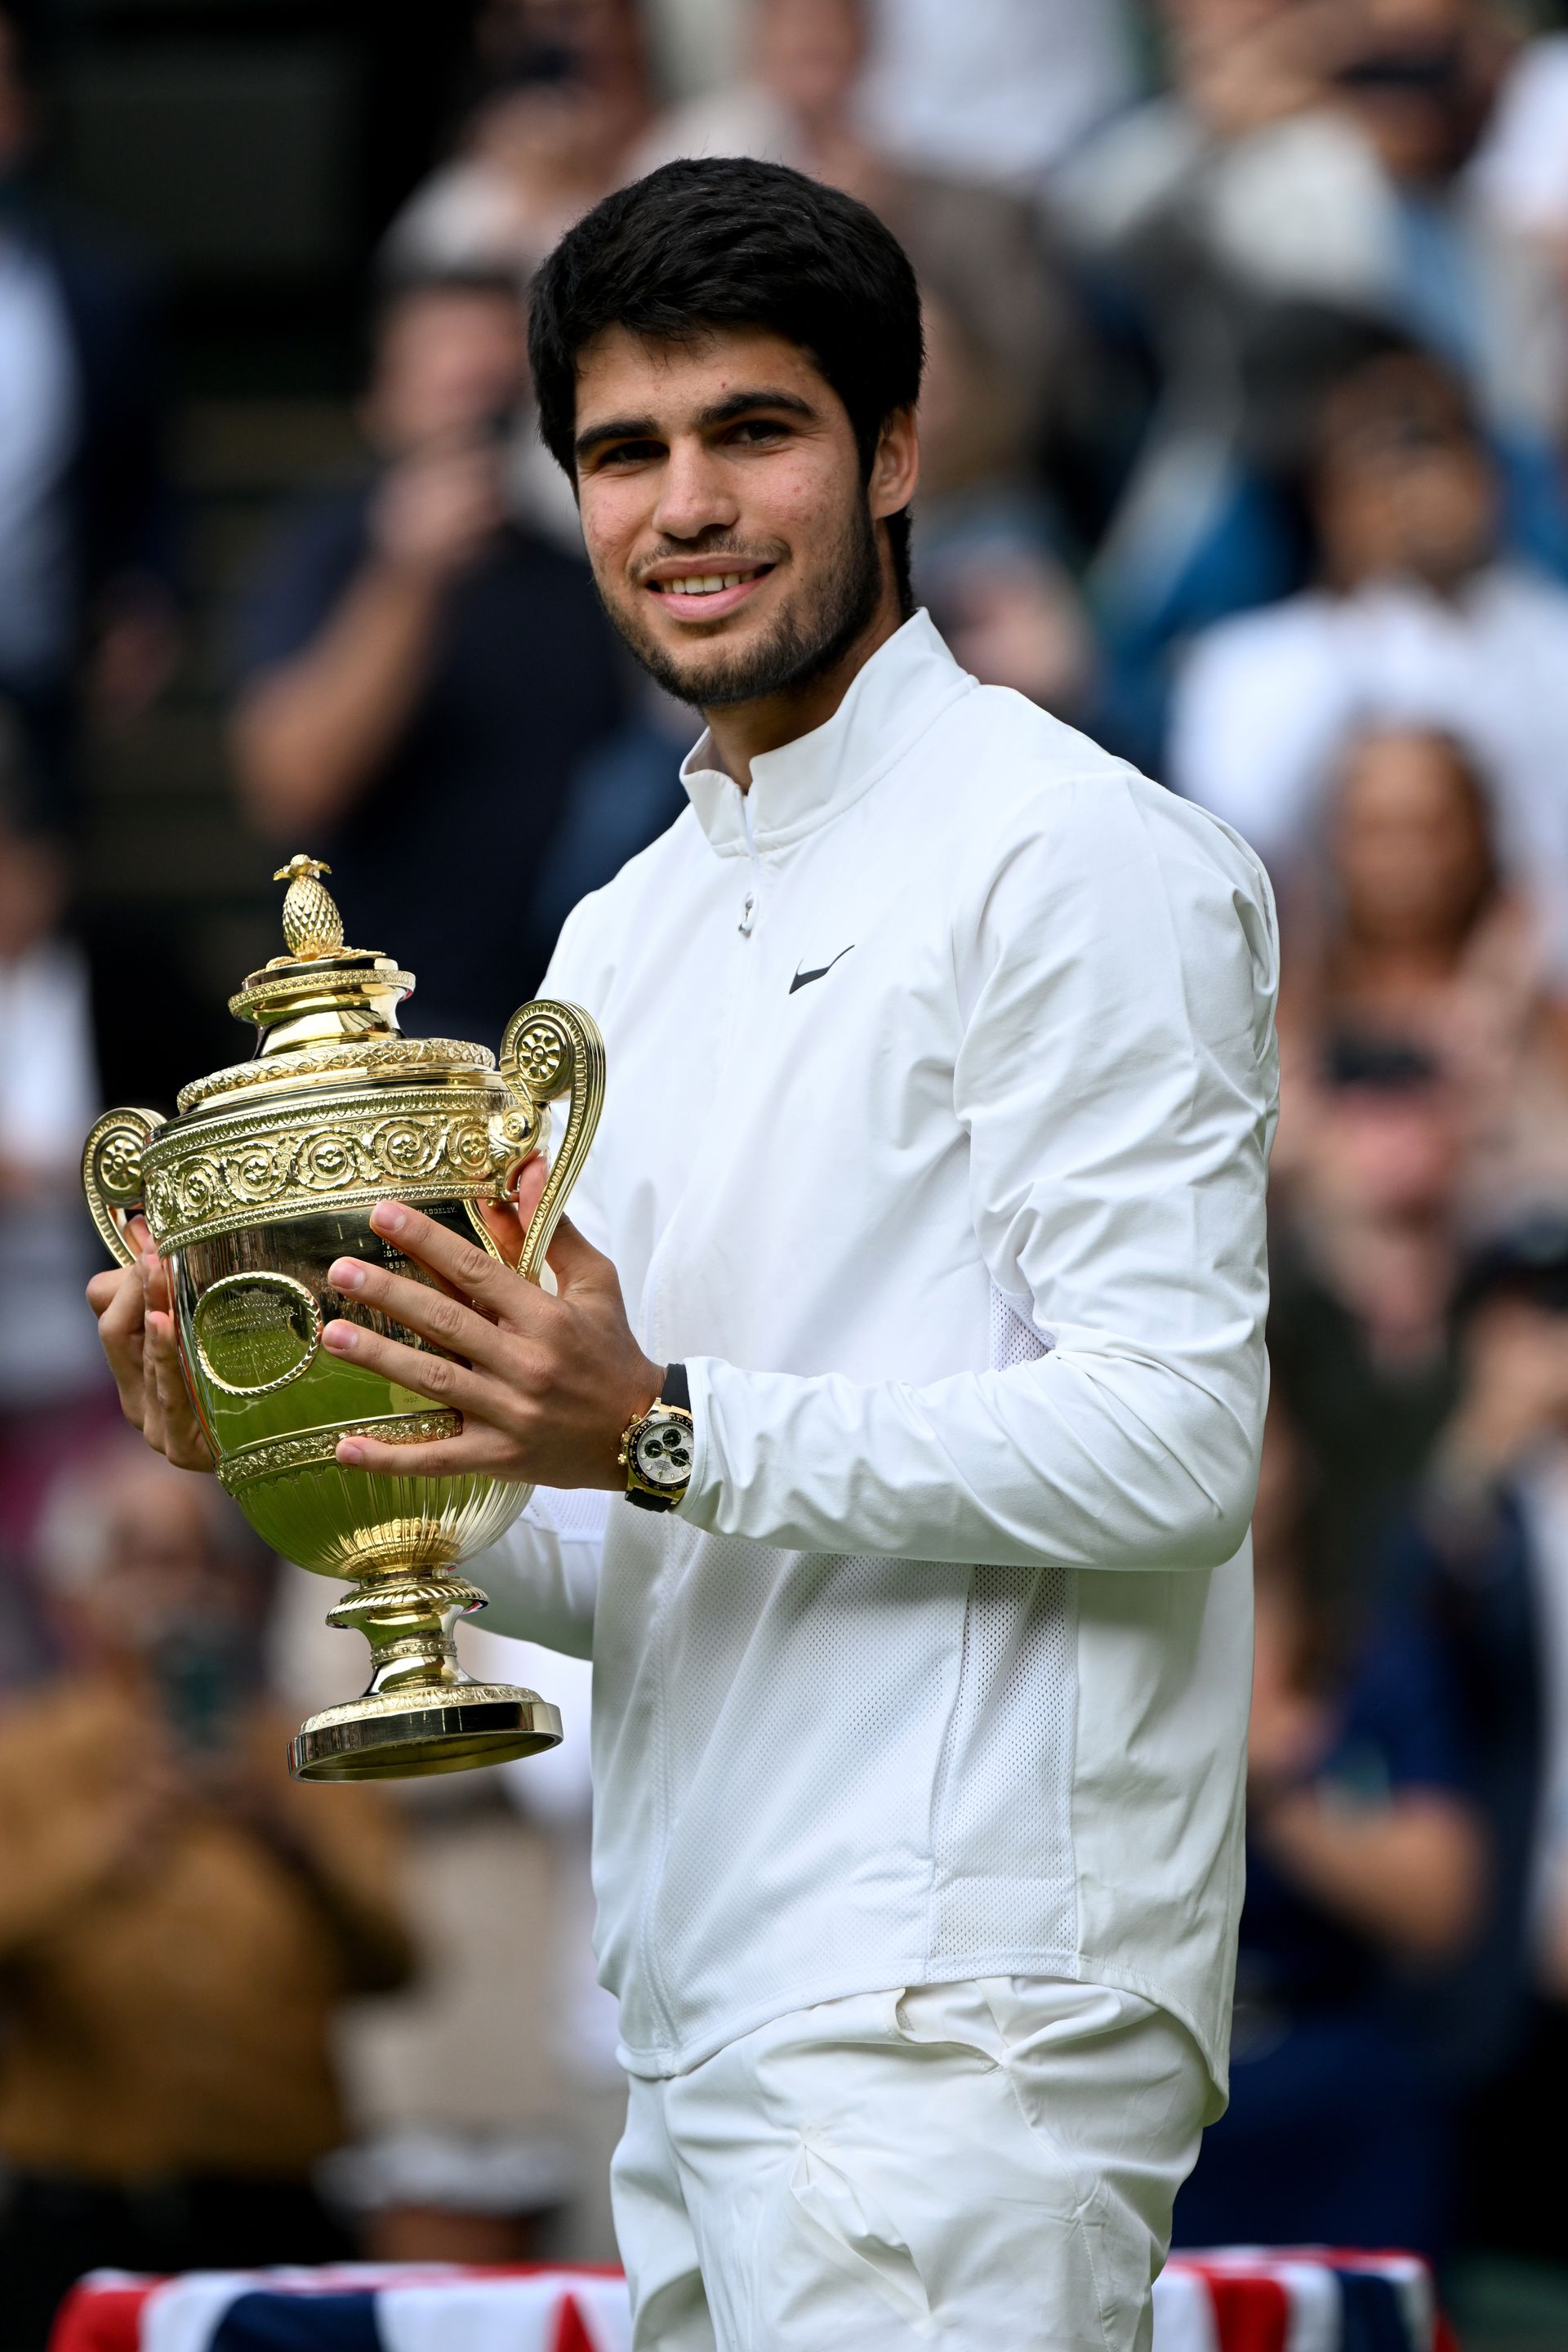 A spanyol 20 évesen lett Wimbledon új királya /Fotó: Getty Images